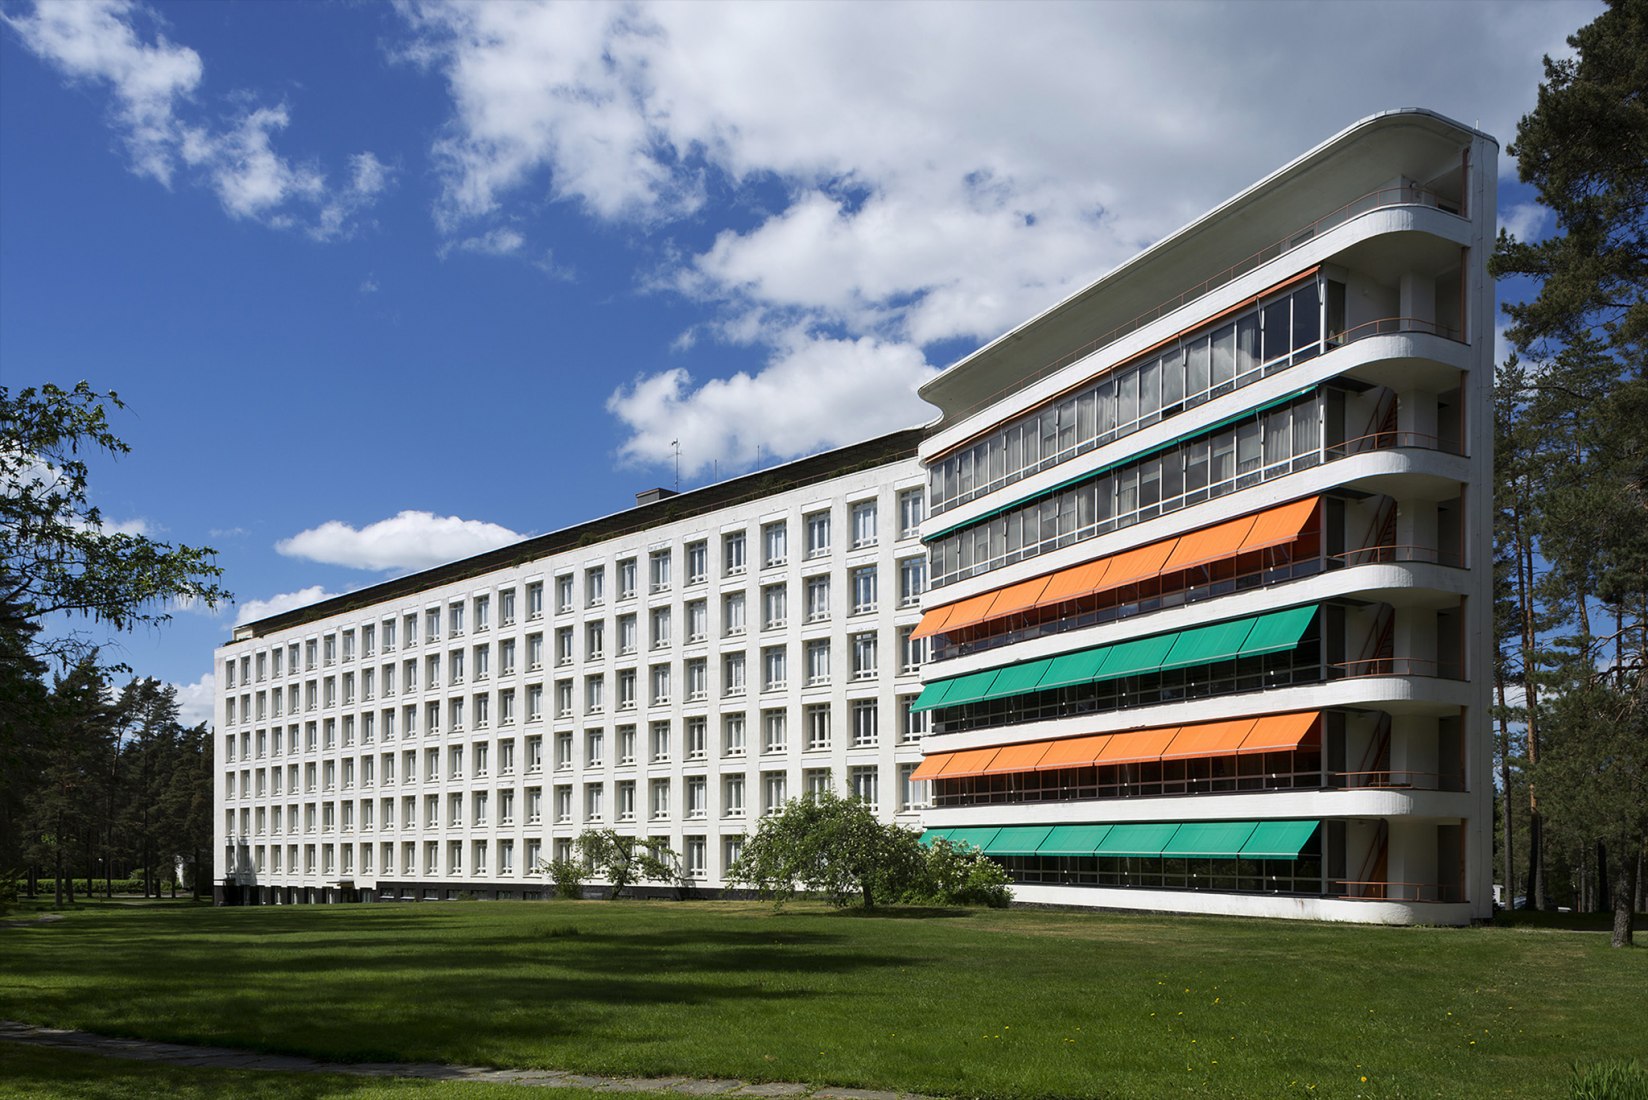 El diseñada Alvar Aalto sanatorio de Paimio en el sur de Finlandia abrió en 1932 y forma la estética de la arquitectura moderna. Fotografía de Maija Holma, Museo Alvar Aalto.